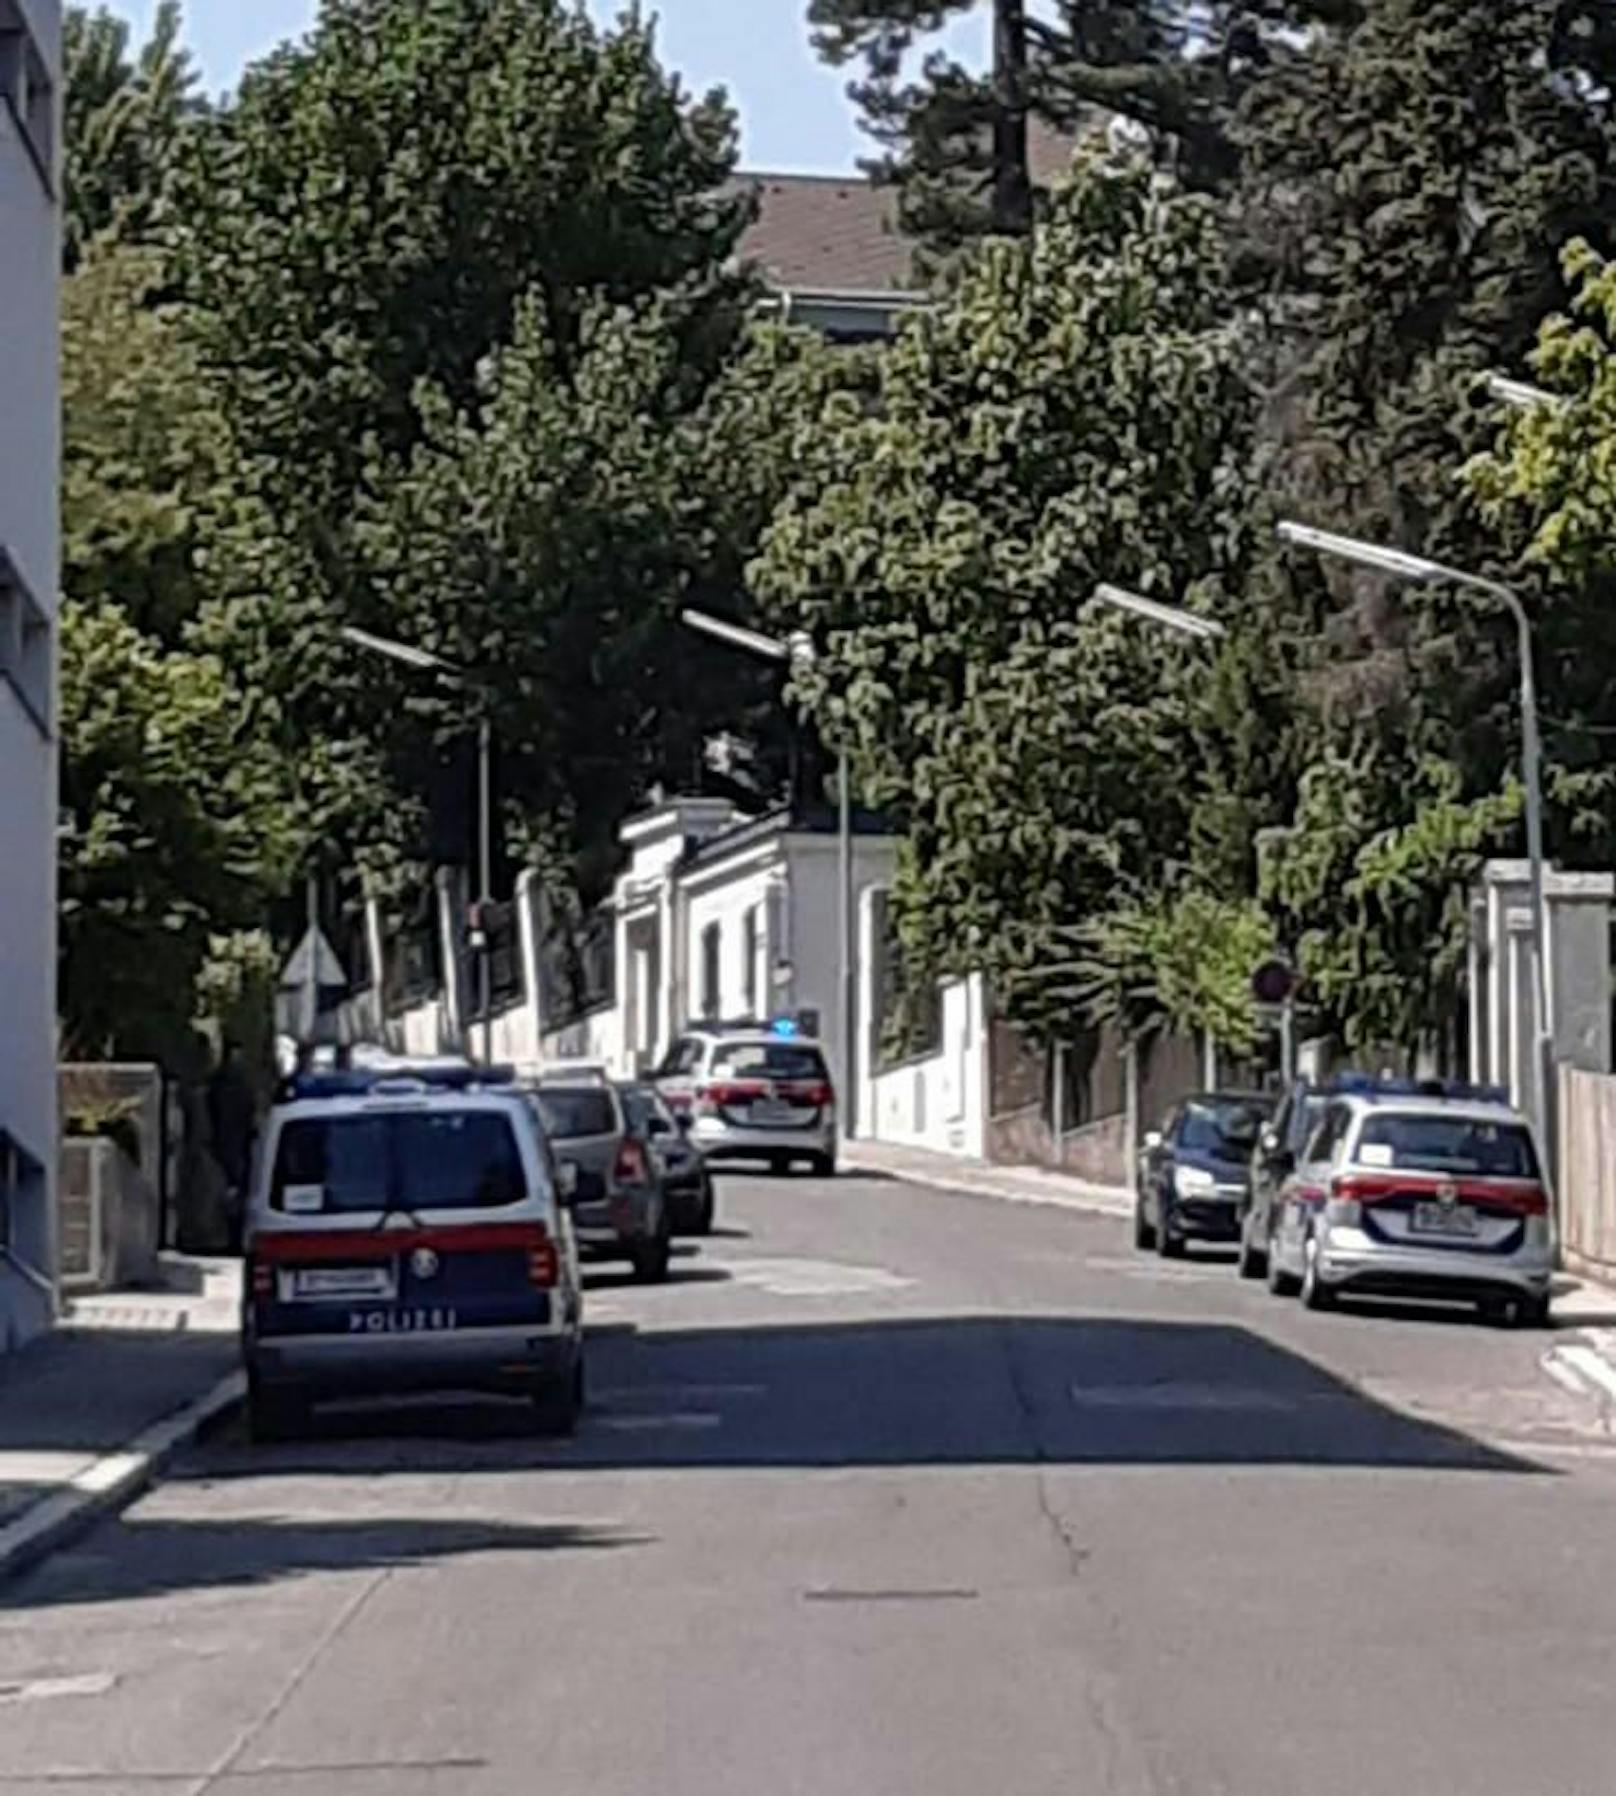 Großer Polizei-Einsatz in Wien-Döbling